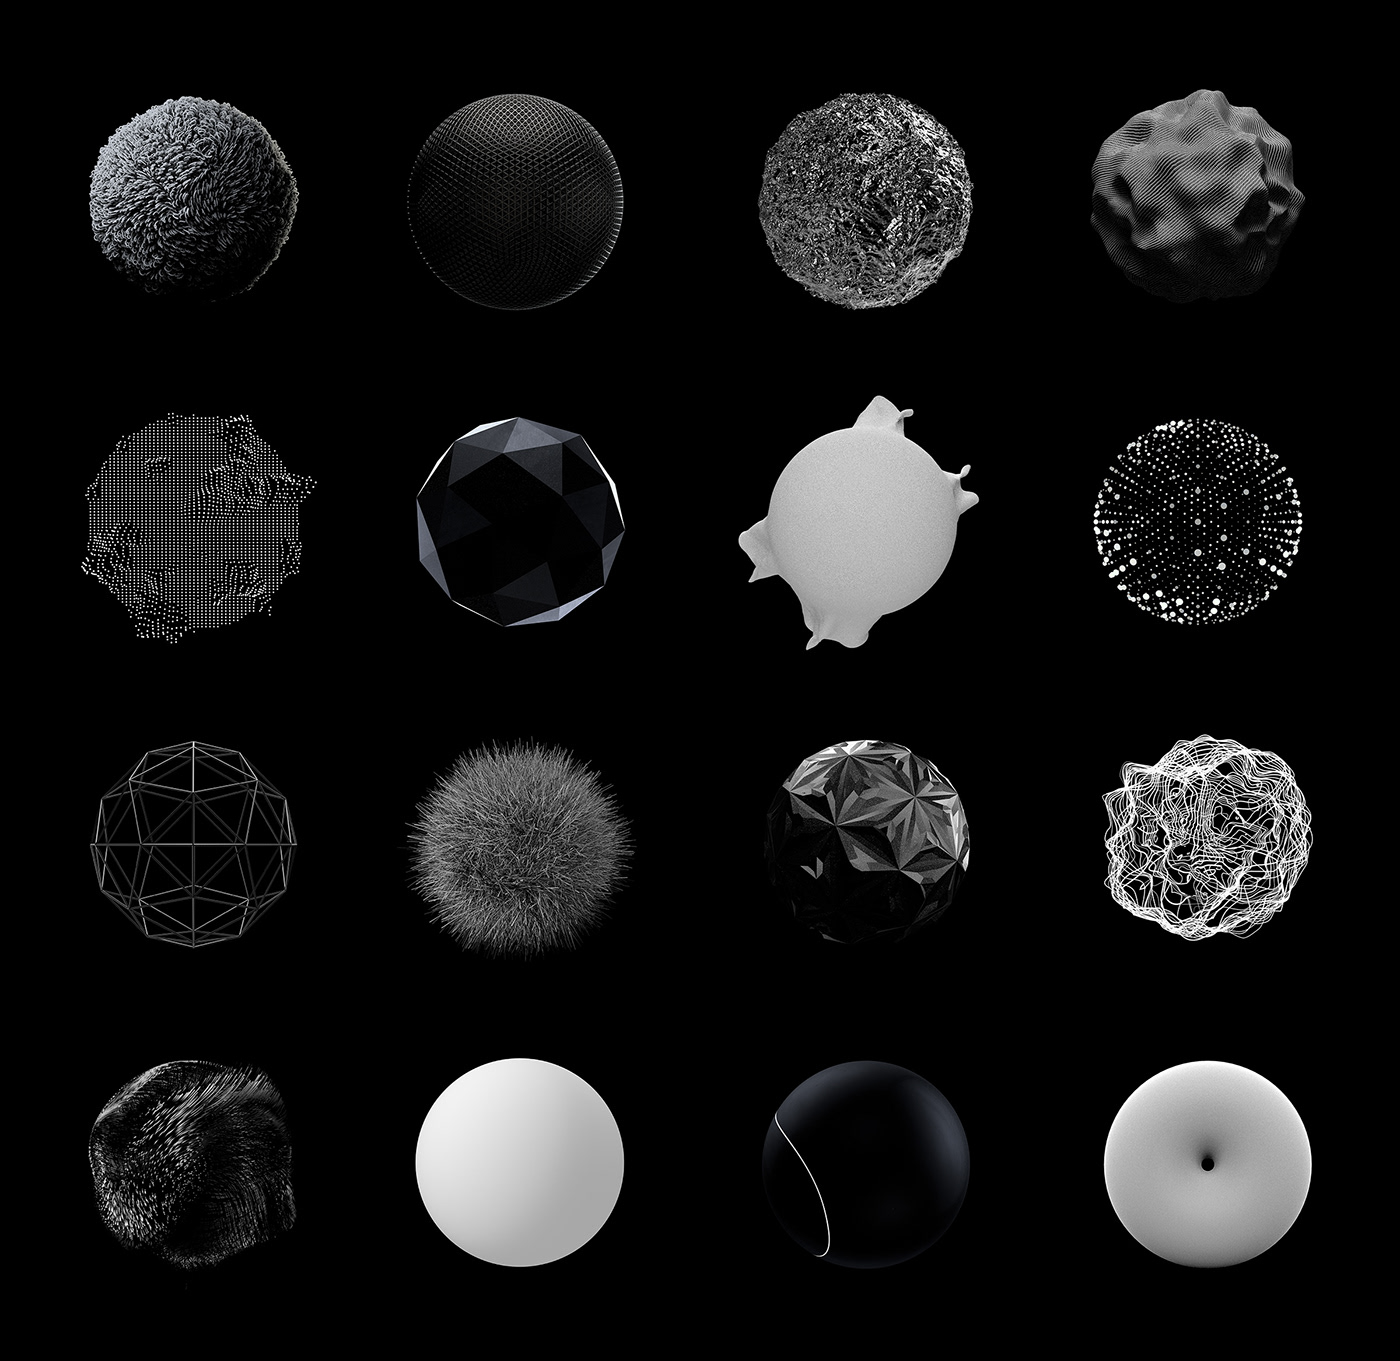 cinema 4d c4d sphere surface texture light experiment CGI wallpaper graphic